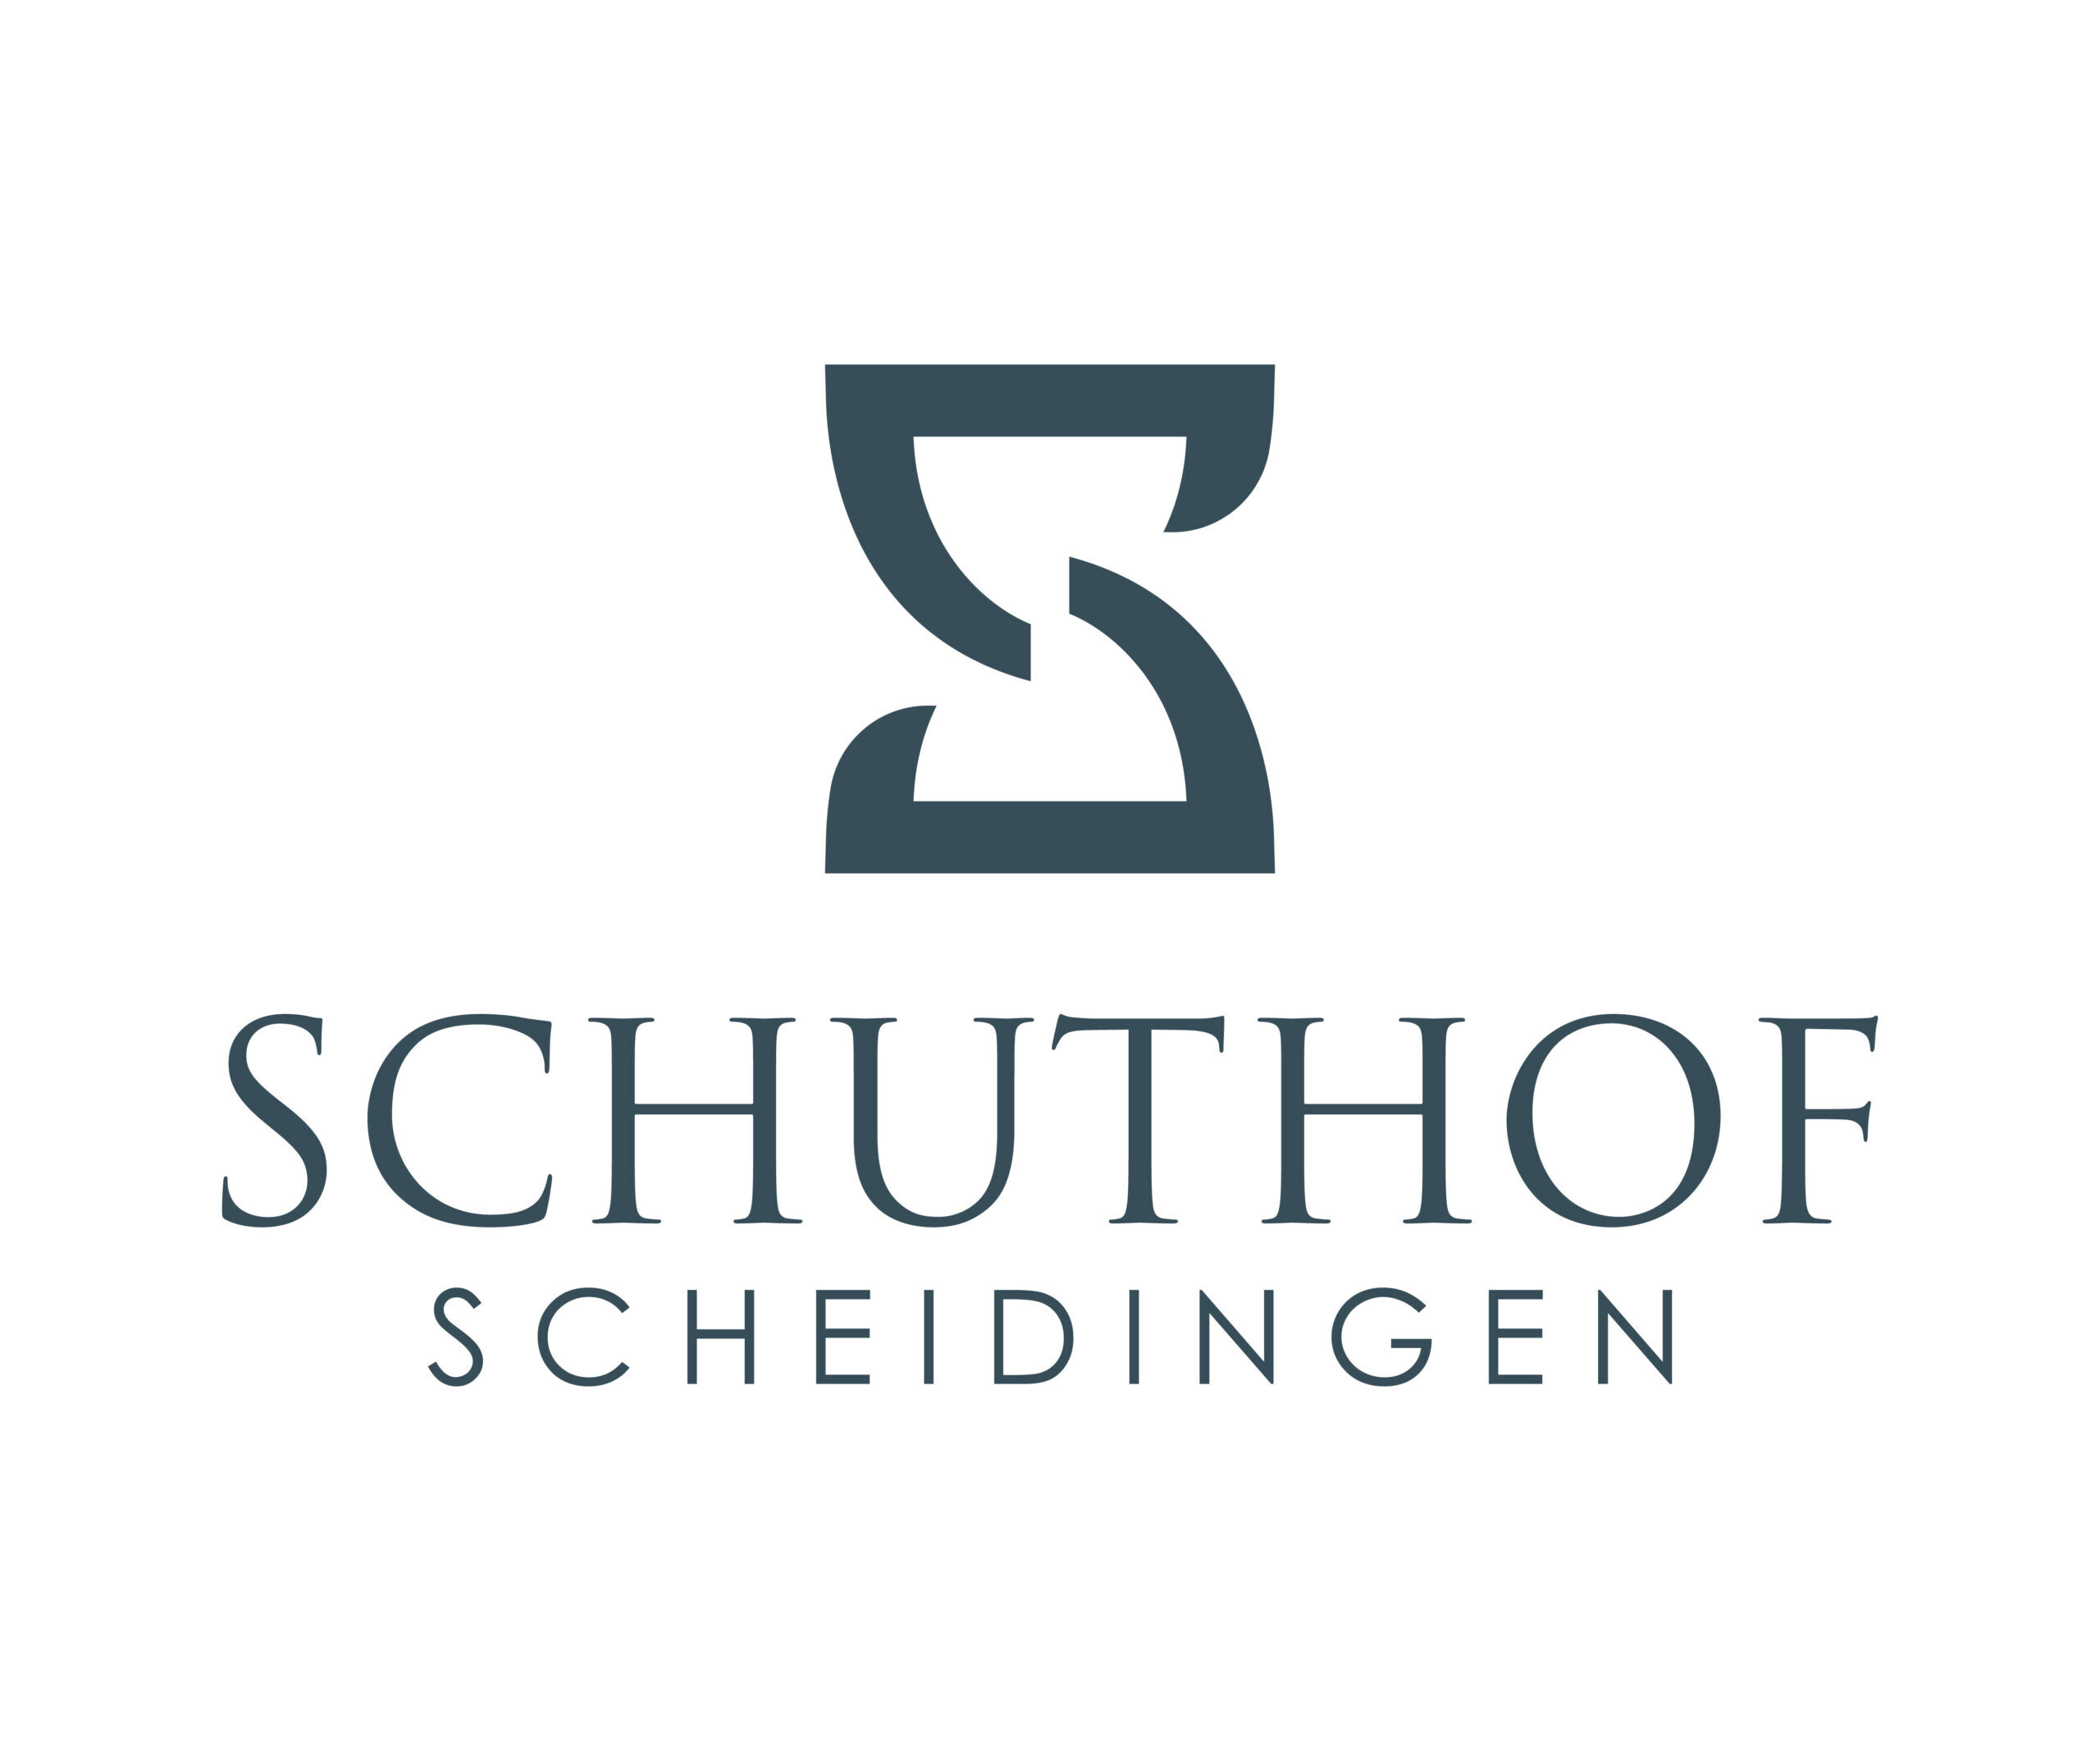 Schuthof Scheidingen